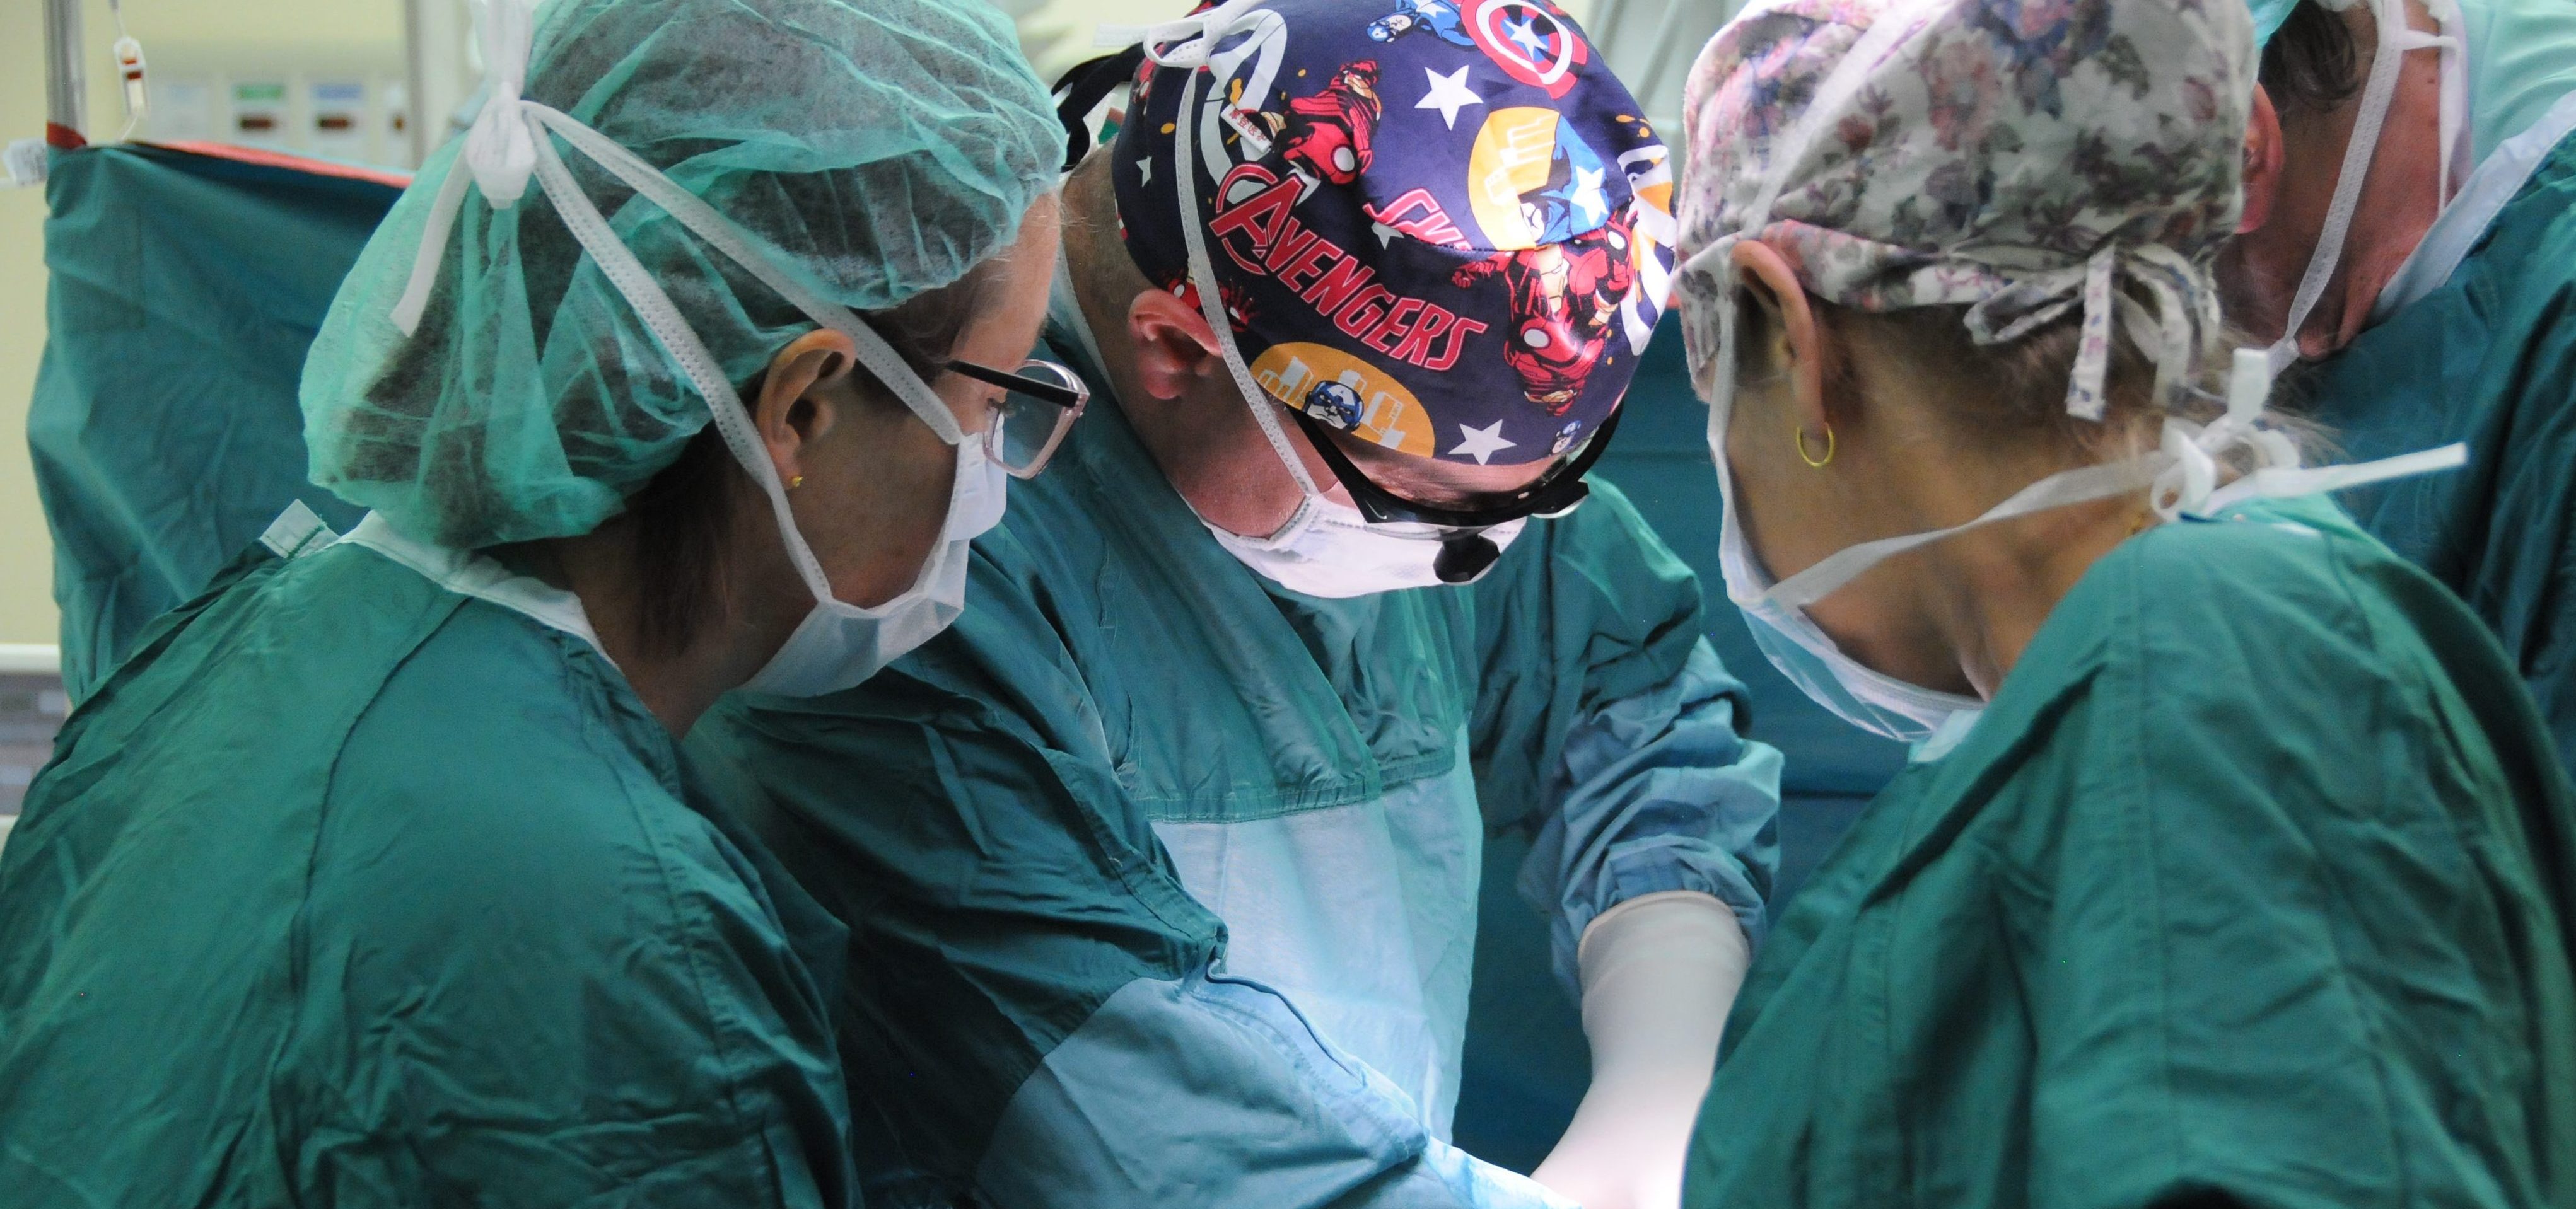 من الناصرة تأتي البشارة عمليّات ولادة قيصريّة طلائعيّة في مستشفى الناصرة- الإنجليزي